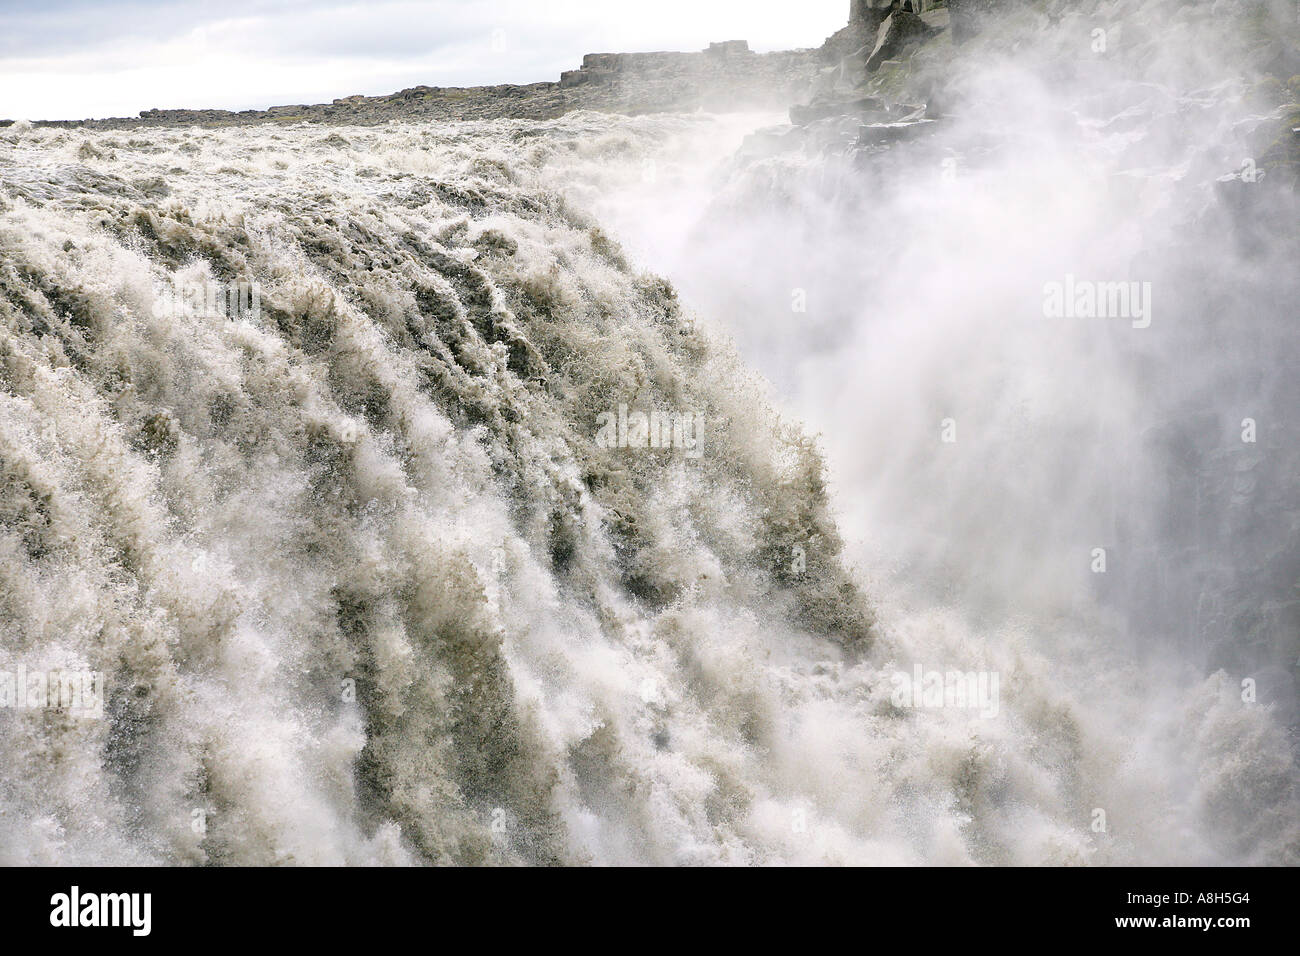 Dettifoss Water Falls, Vatnajökull National Park, Iceland Stock Photo